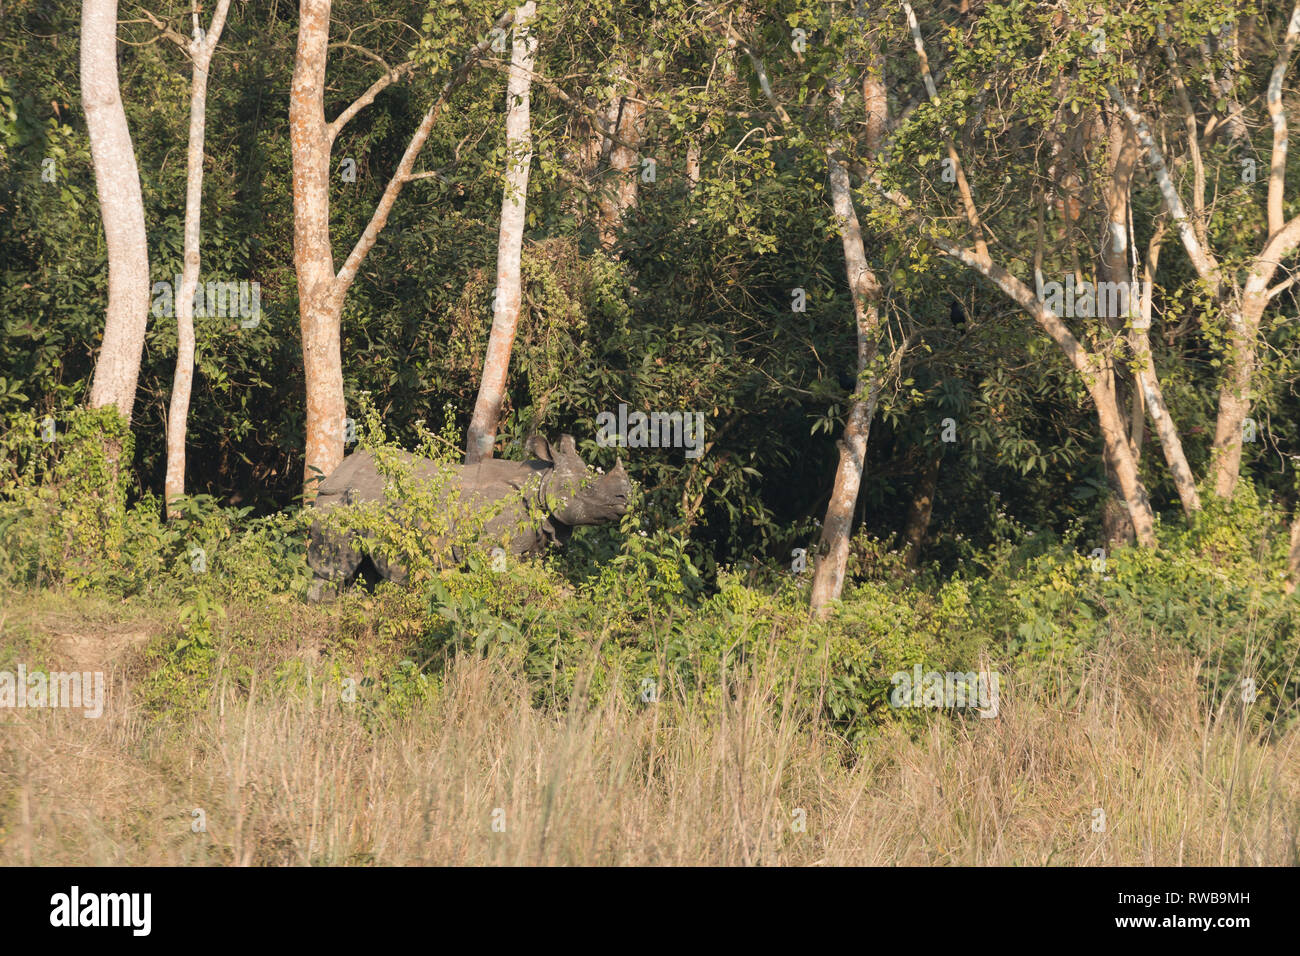 Le rhinocéros indien (Rhinoceros unicornis) dans le parc national de Chitwan, Népal - une destination populaire pour les touristes l'observation de la faune. Banque D'Images